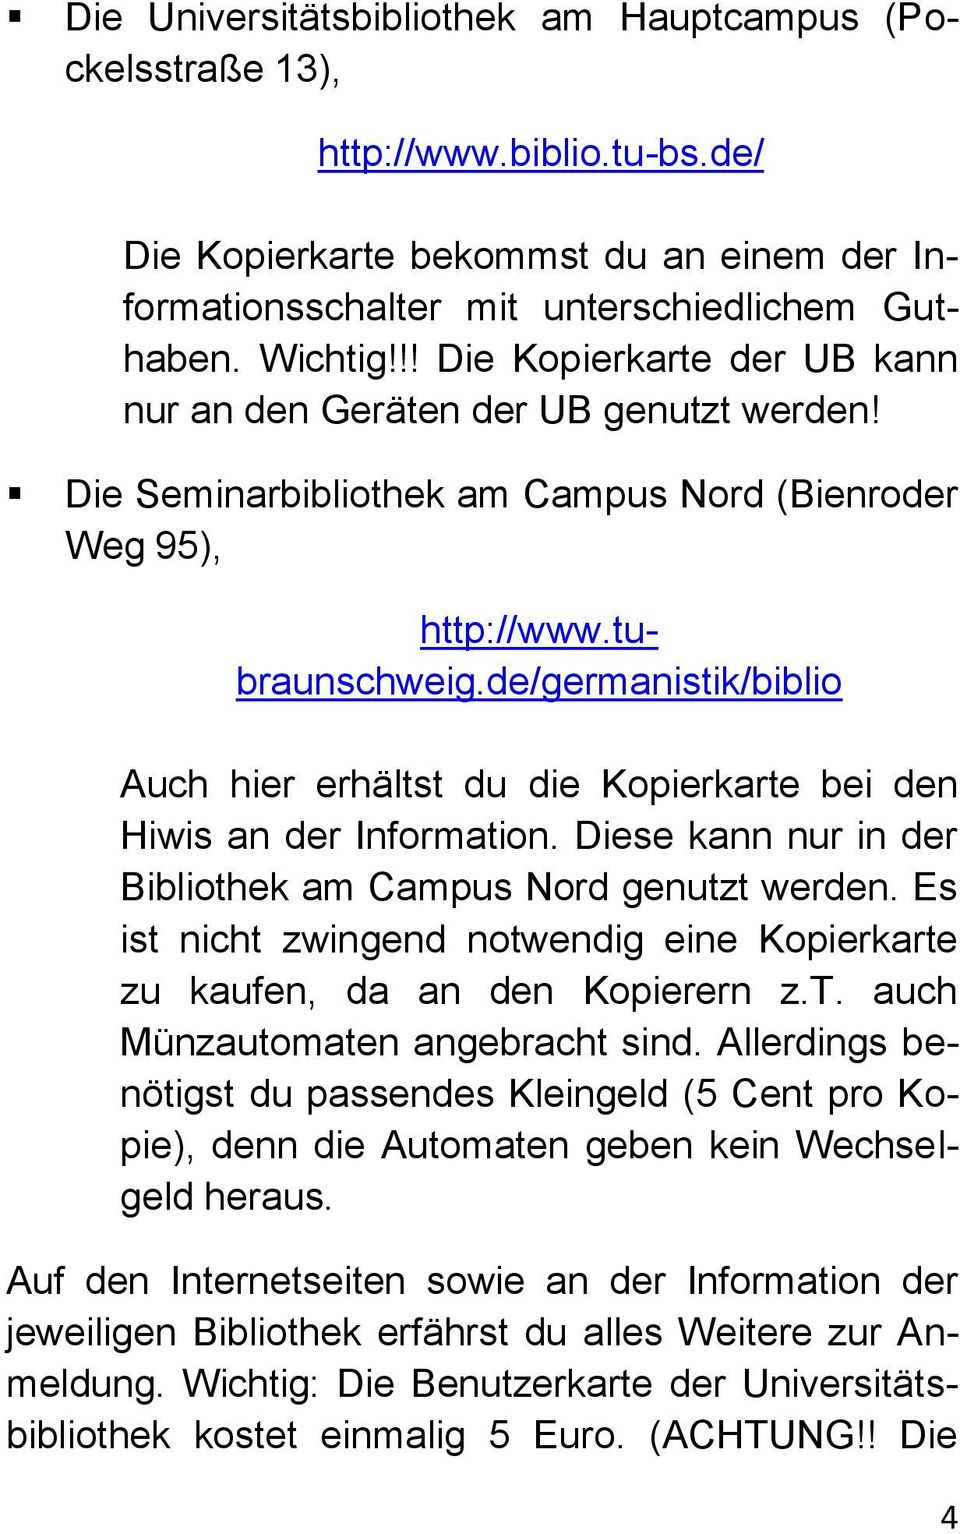 de/germanistik/biblio Auch hier erhältst du die Kopierkarte bei den Hiwis an der Information. Diese kann nur in der Bibliothek am Campus Nord genutzt werden.